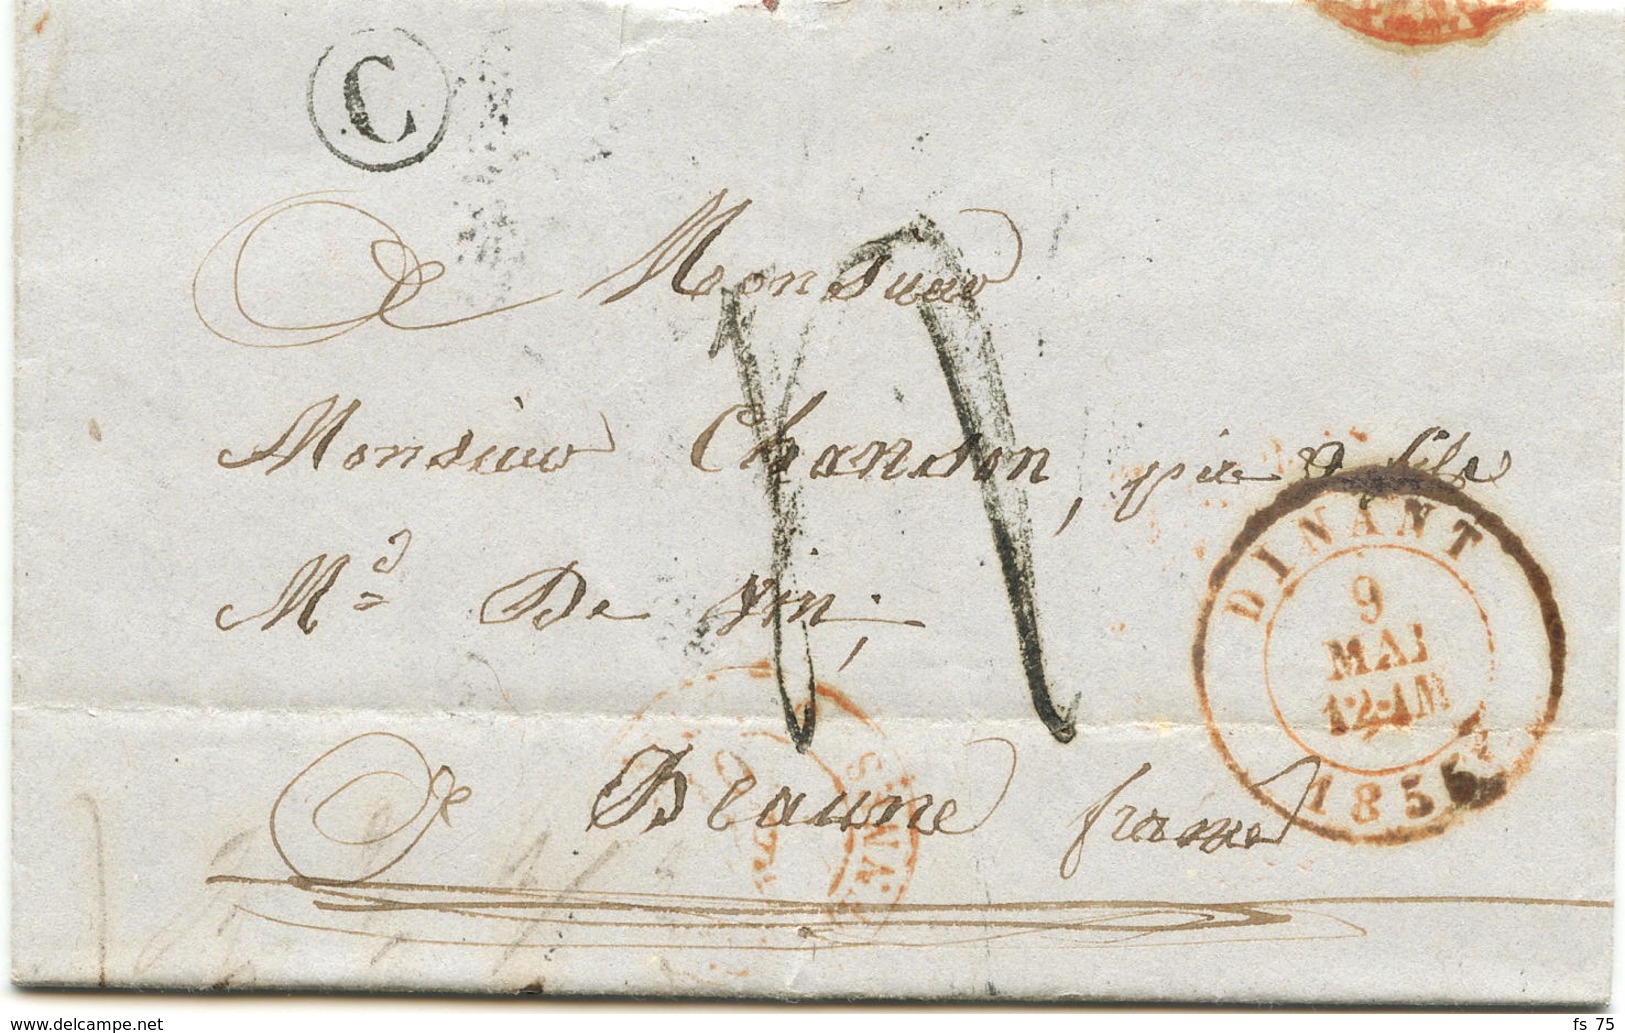 BELGIQUE - CAD DINANT + BOITE C SUR LETTRE AVEC TEXTE DE FLAVION POUR LA FRANCE, 1855 - 1830-1849 (Belgique Indépendante)